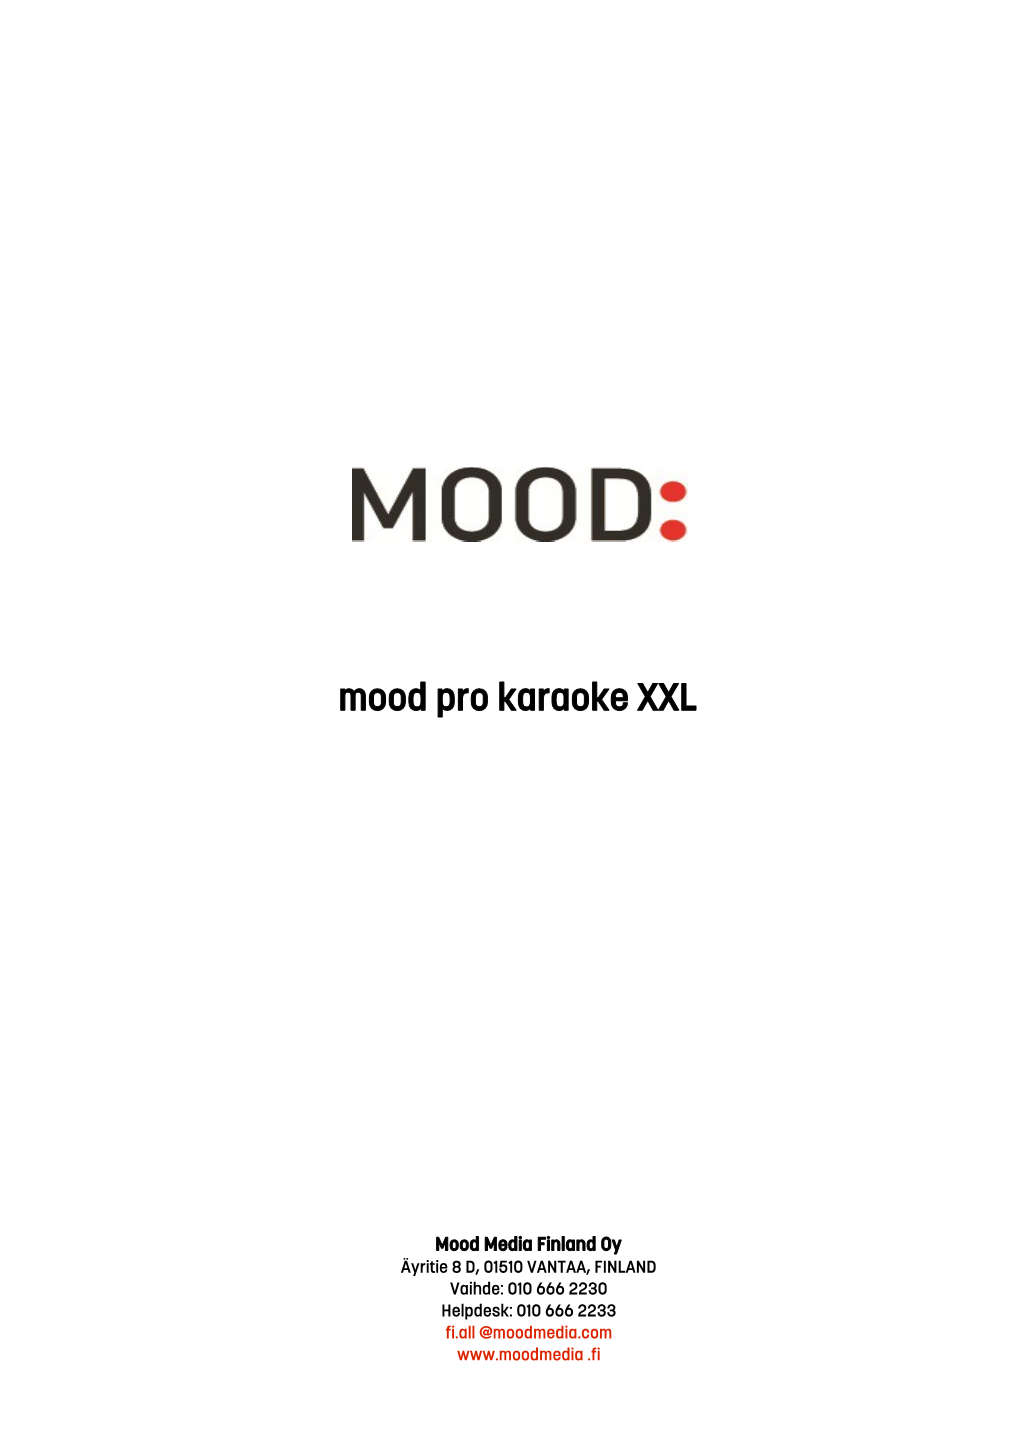 Mood Pro Karaoke XXL